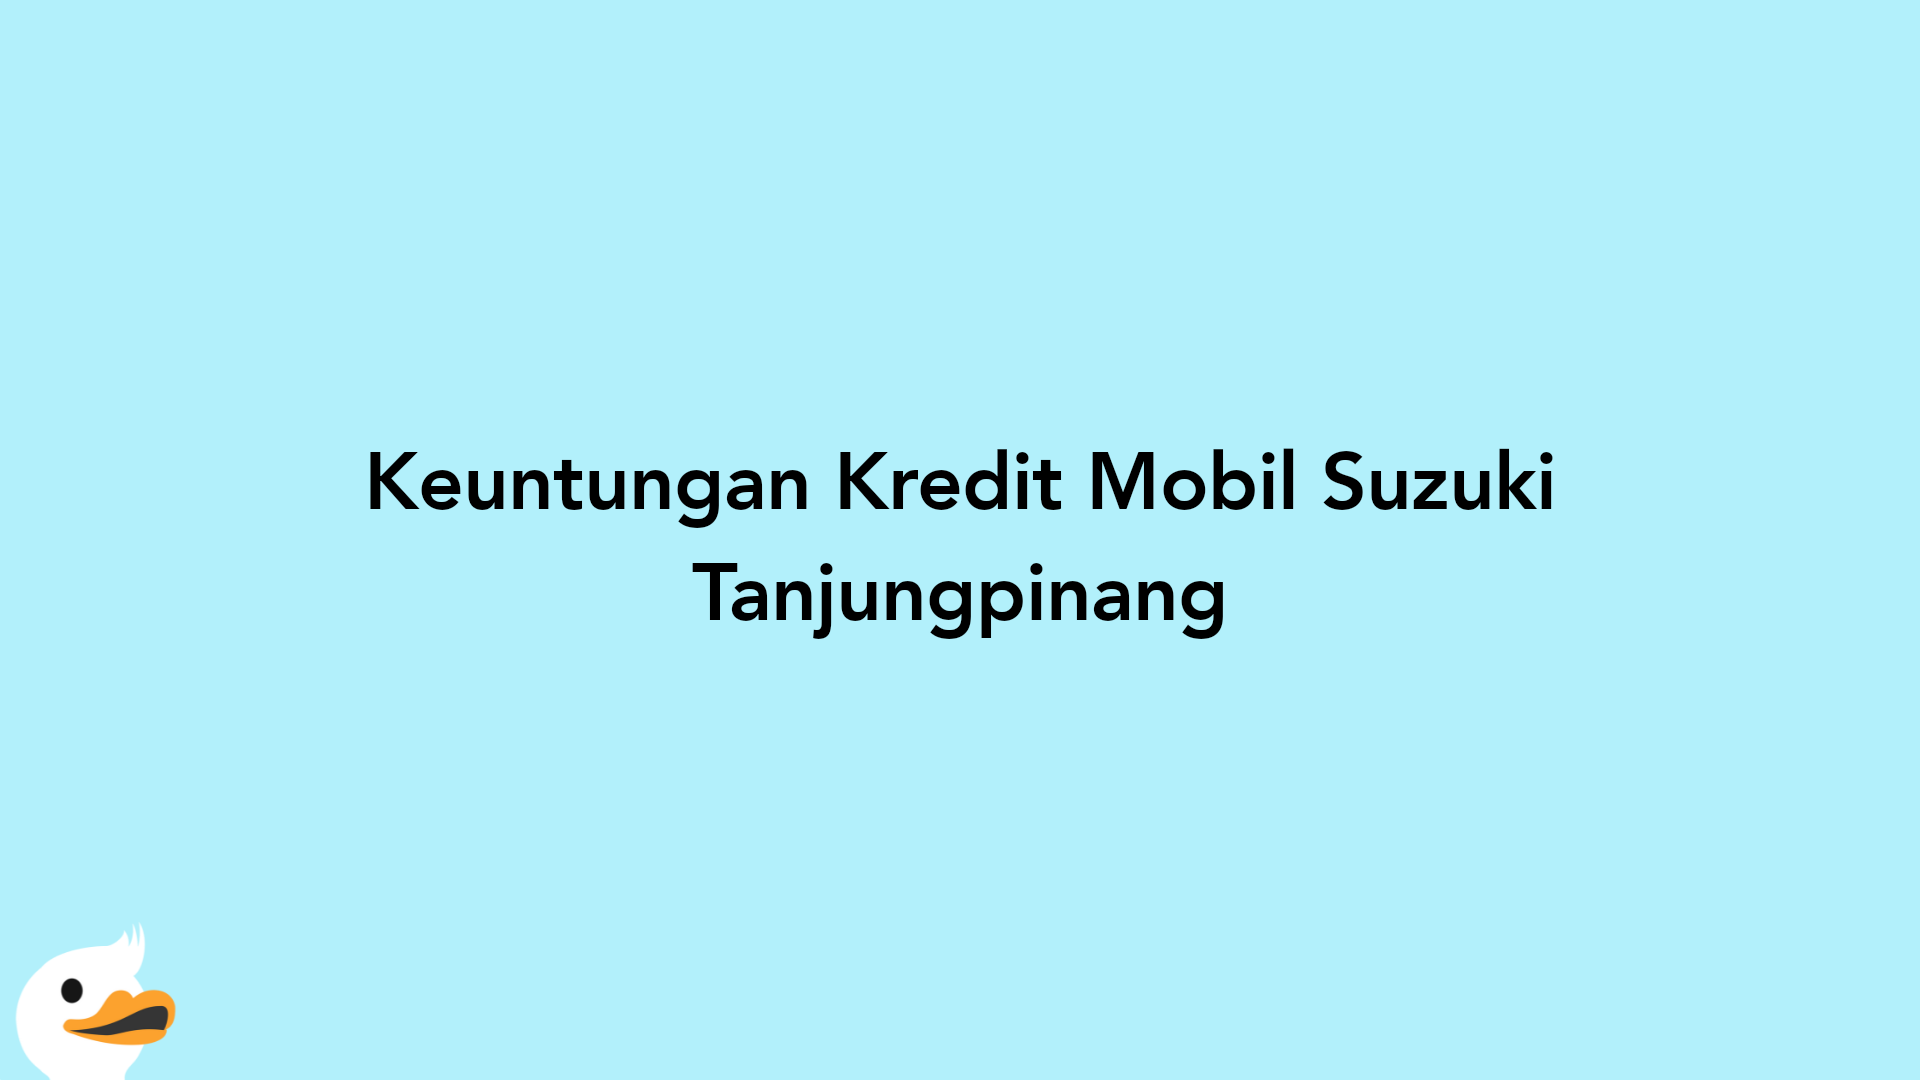 Keuntungan Kredit Mobil Suzuki Tanjungpinang